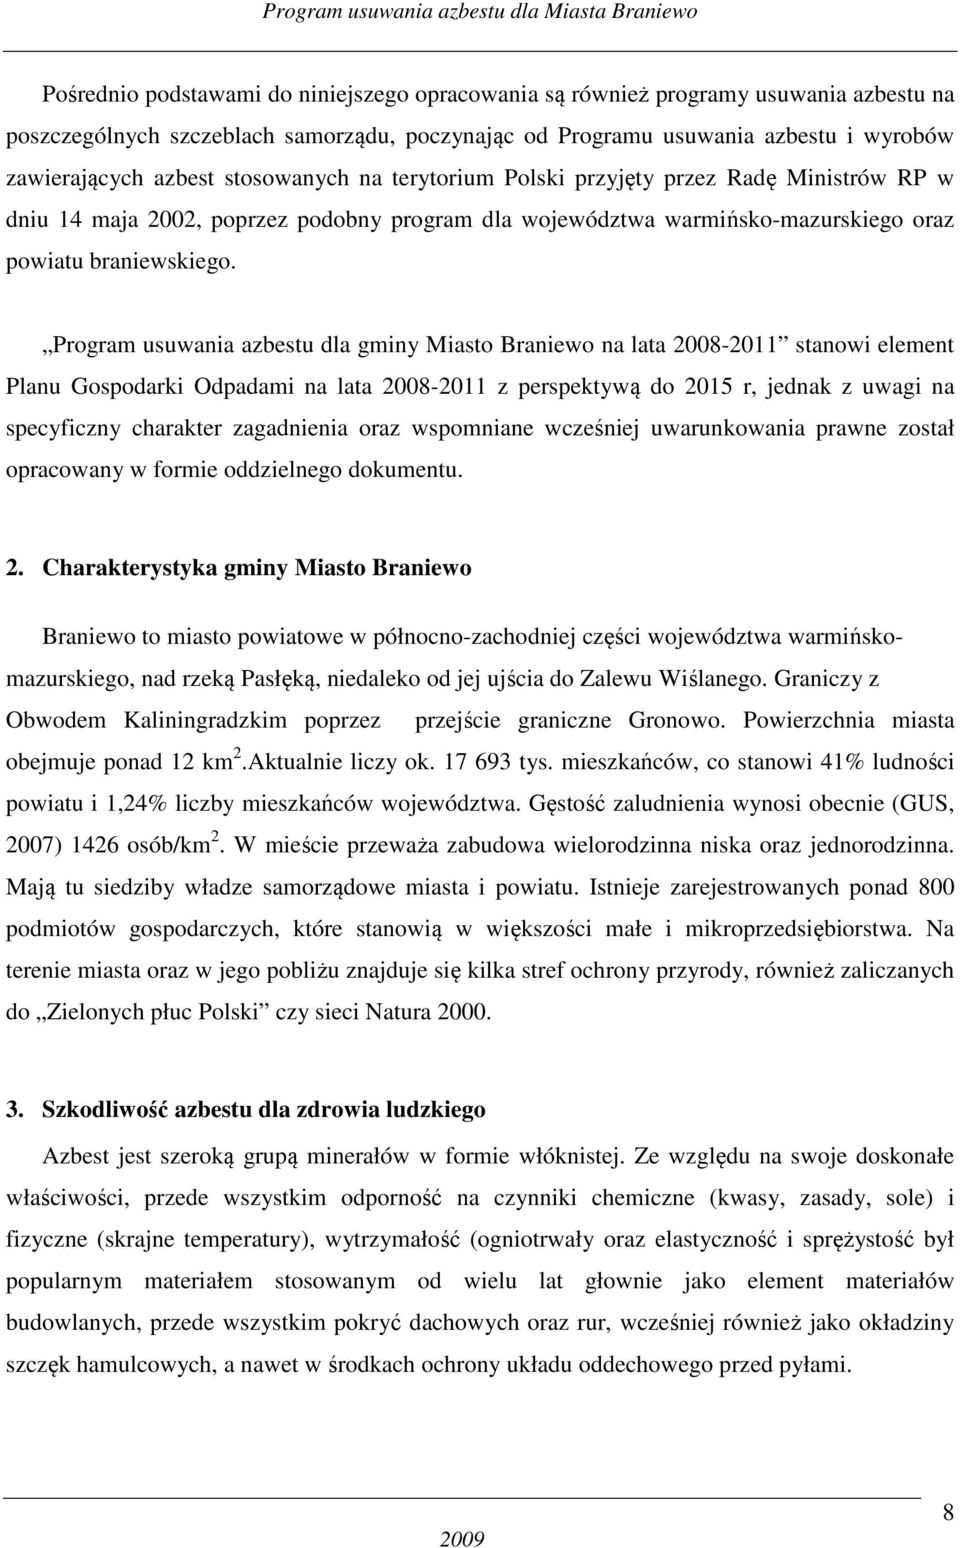 Program usuwania azbestu dla gminy Miasto Braniewo na lata 2008-2011 stanowi element Planu Gospodarki Odpadami na lata 2008-2011 z perspektywą do 2015 r, jednak z uwagi na specyficzny charakter